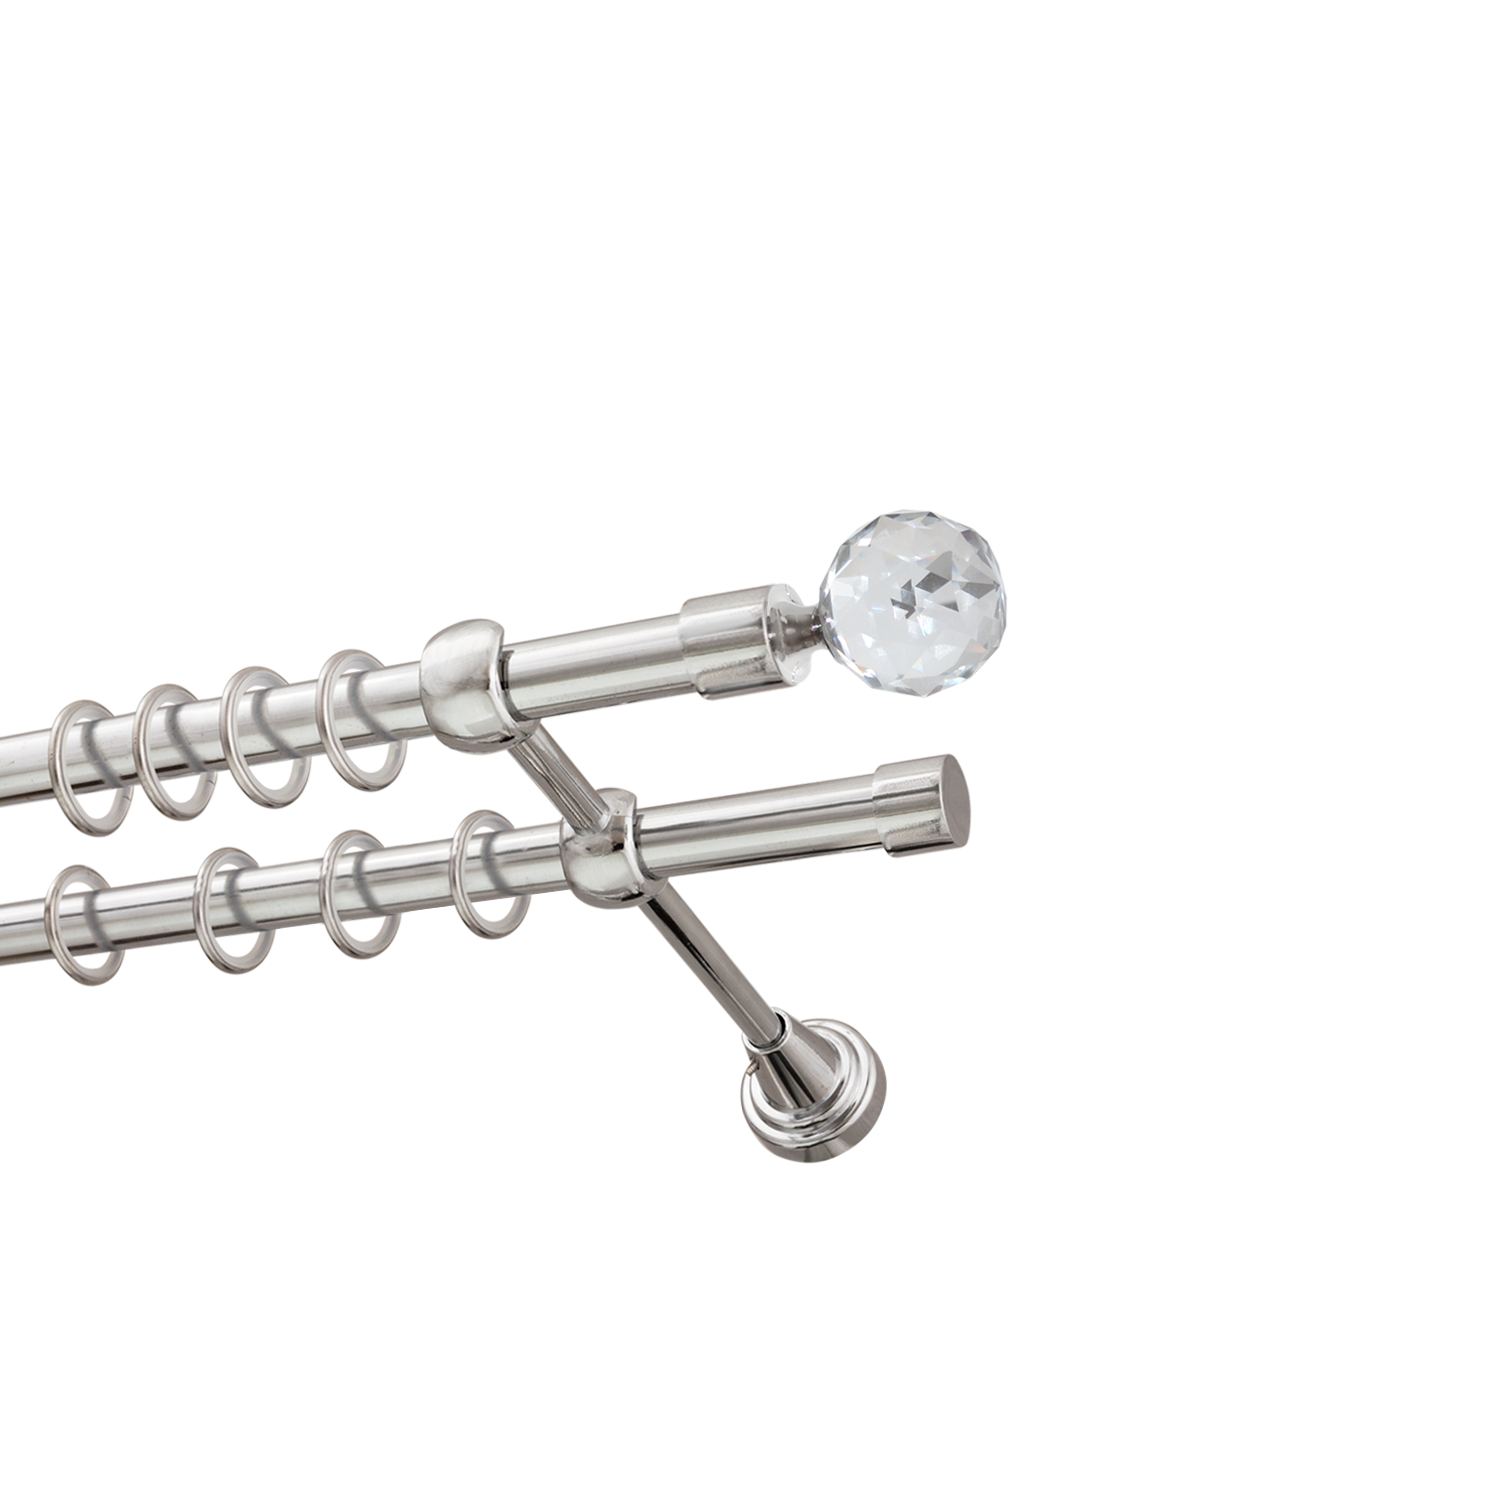 Металлический карниз для штор Карат, двухрядный 16/16 мм, серебро, гладкая штанга, длина 300 см - фото Wikidecor.ru